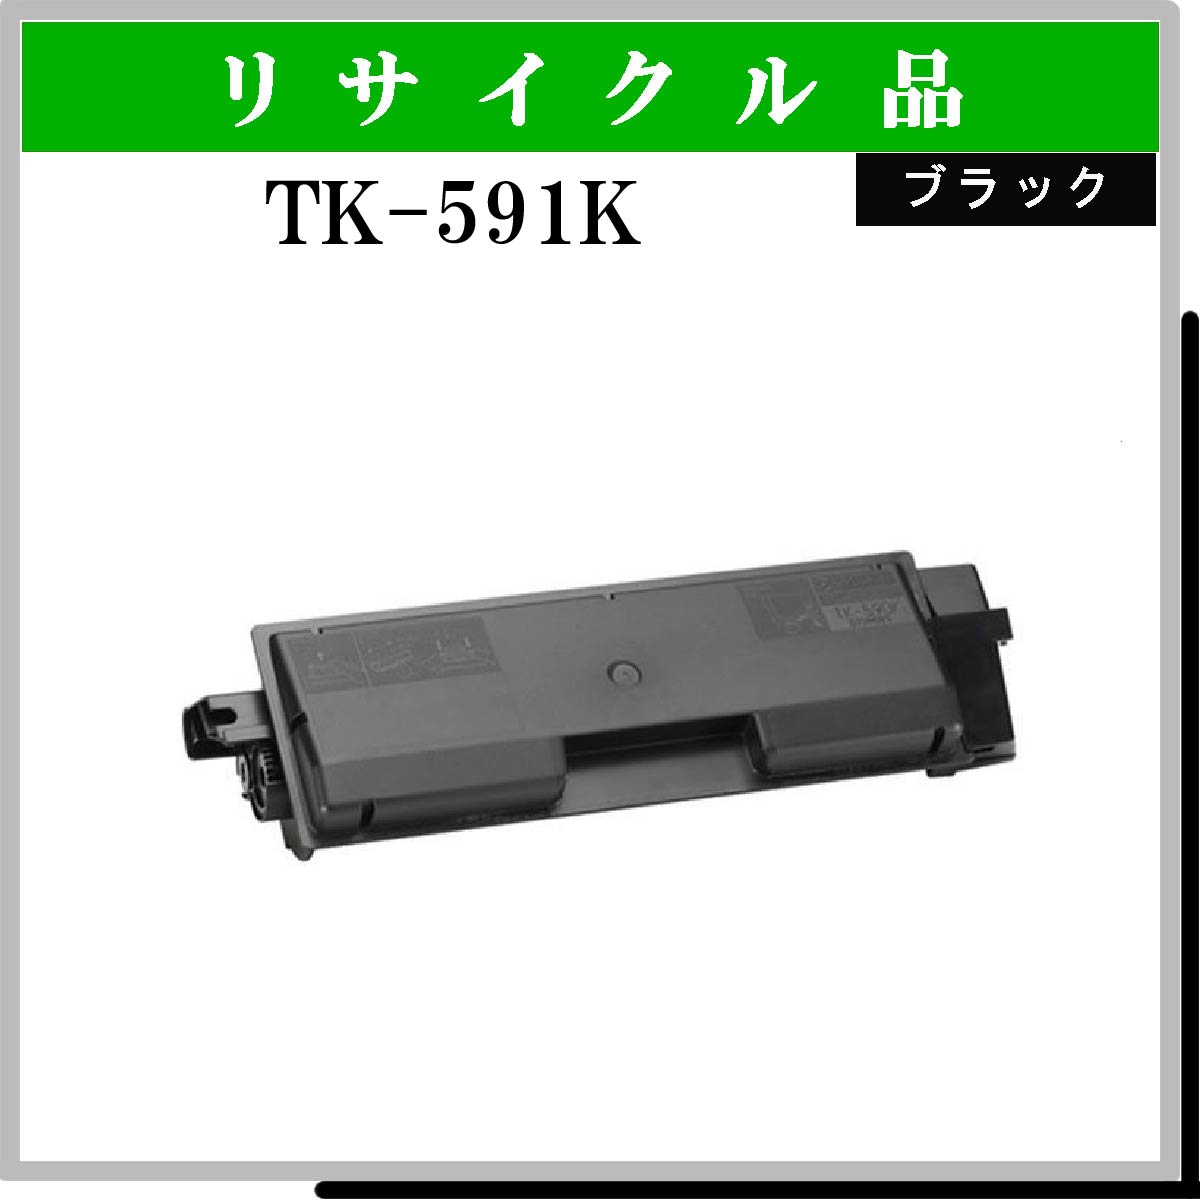 TK-591K